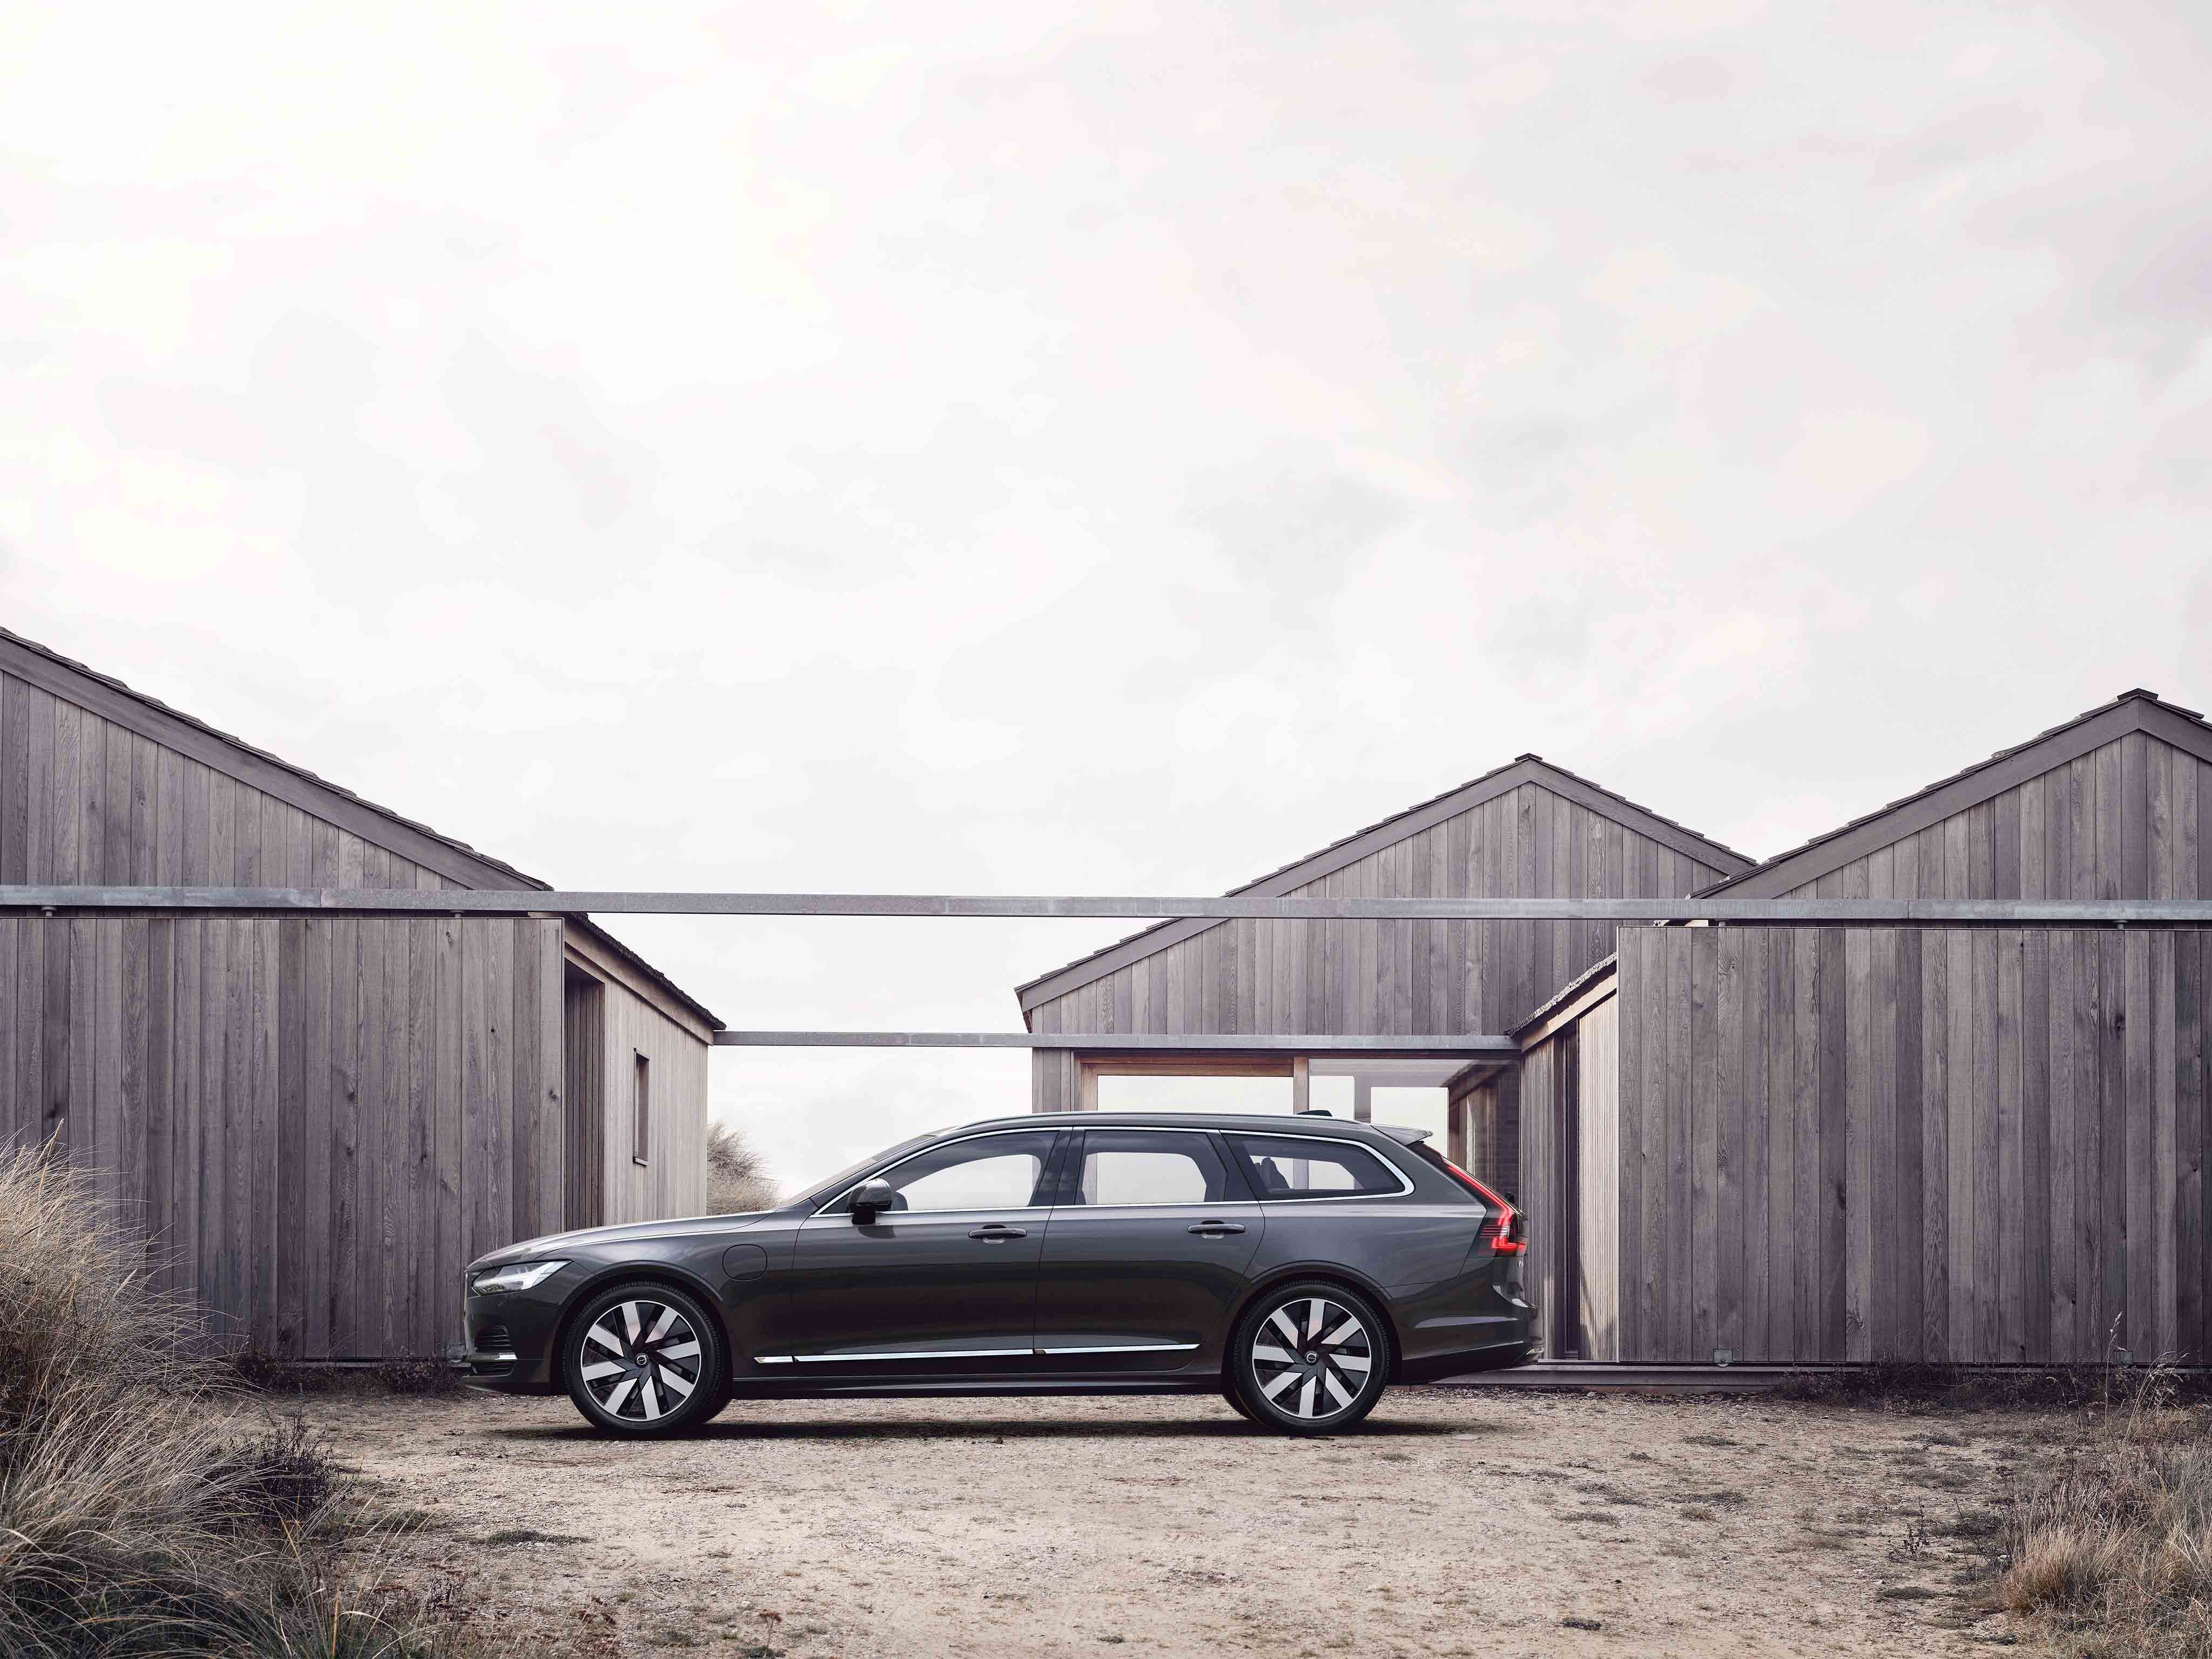 Tumman harma Volvo V90 parkkeerattuna harmaiden lautatalojen eteen.